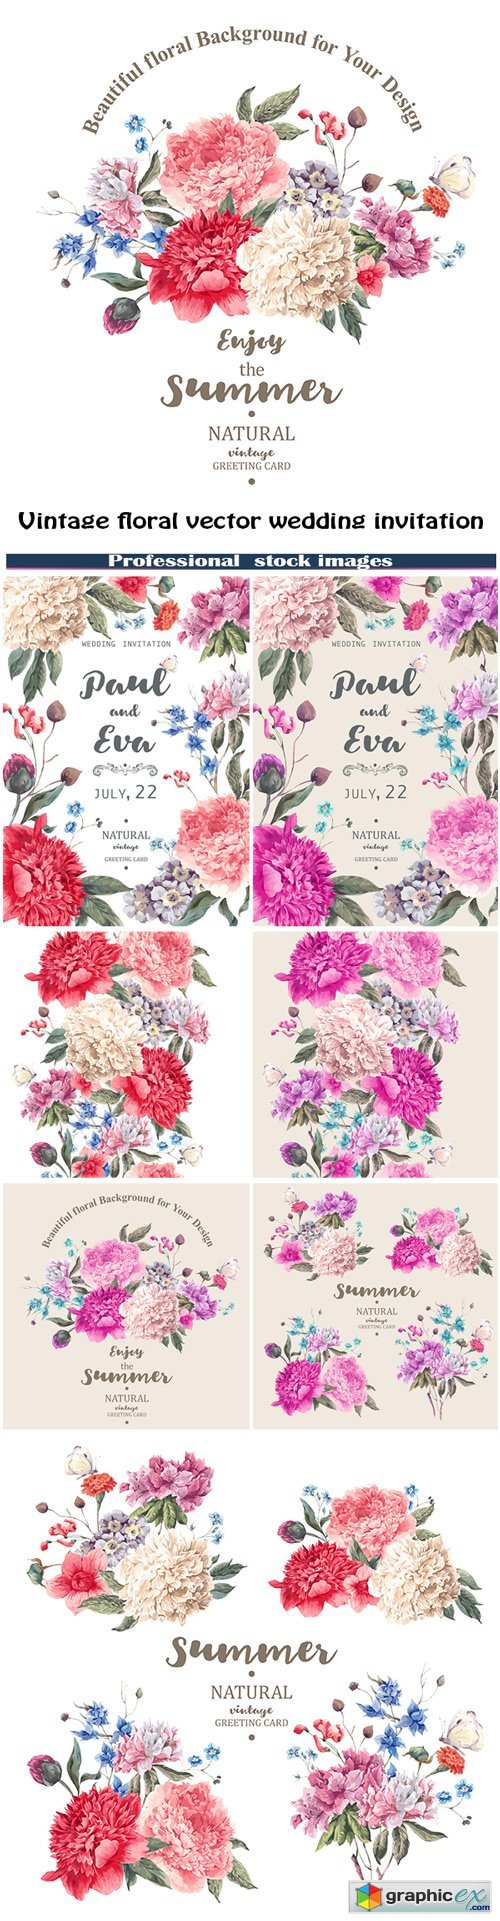 Vintage floral vector wedding invitation